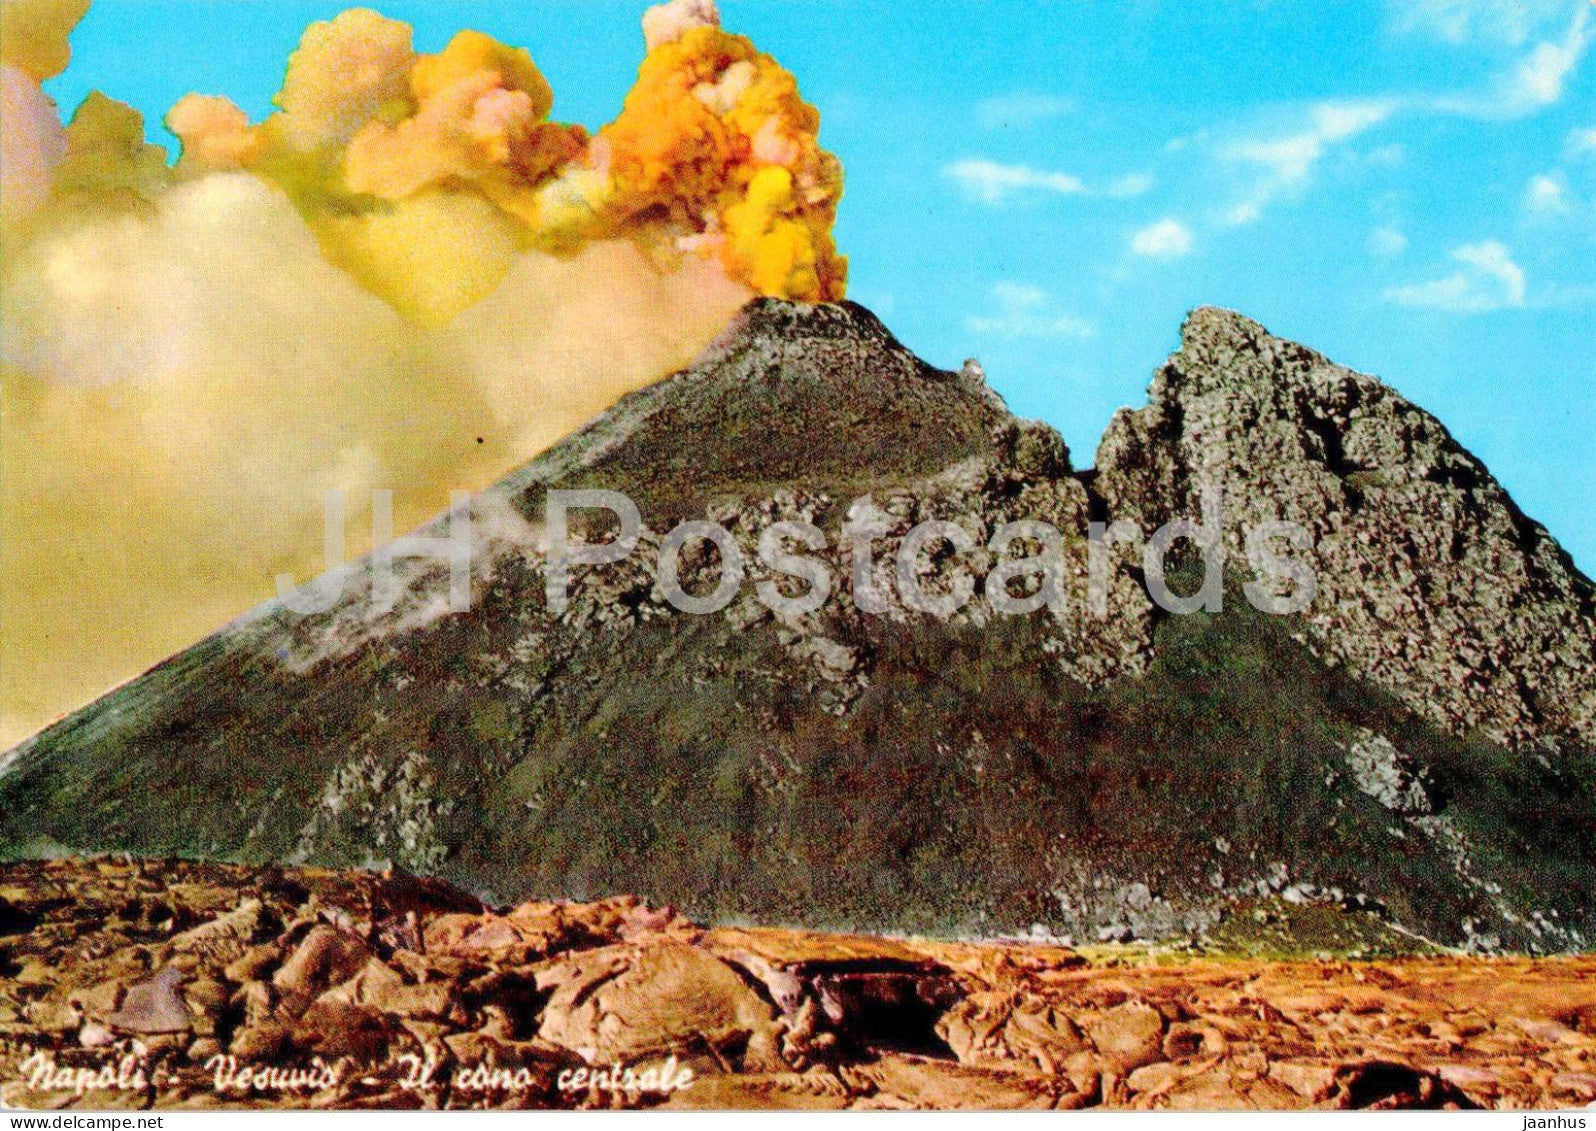 Napoli - Vesuvio - Il cono centrale - The central cone - volcano - 29246 - Italy - unused - JH Postcards